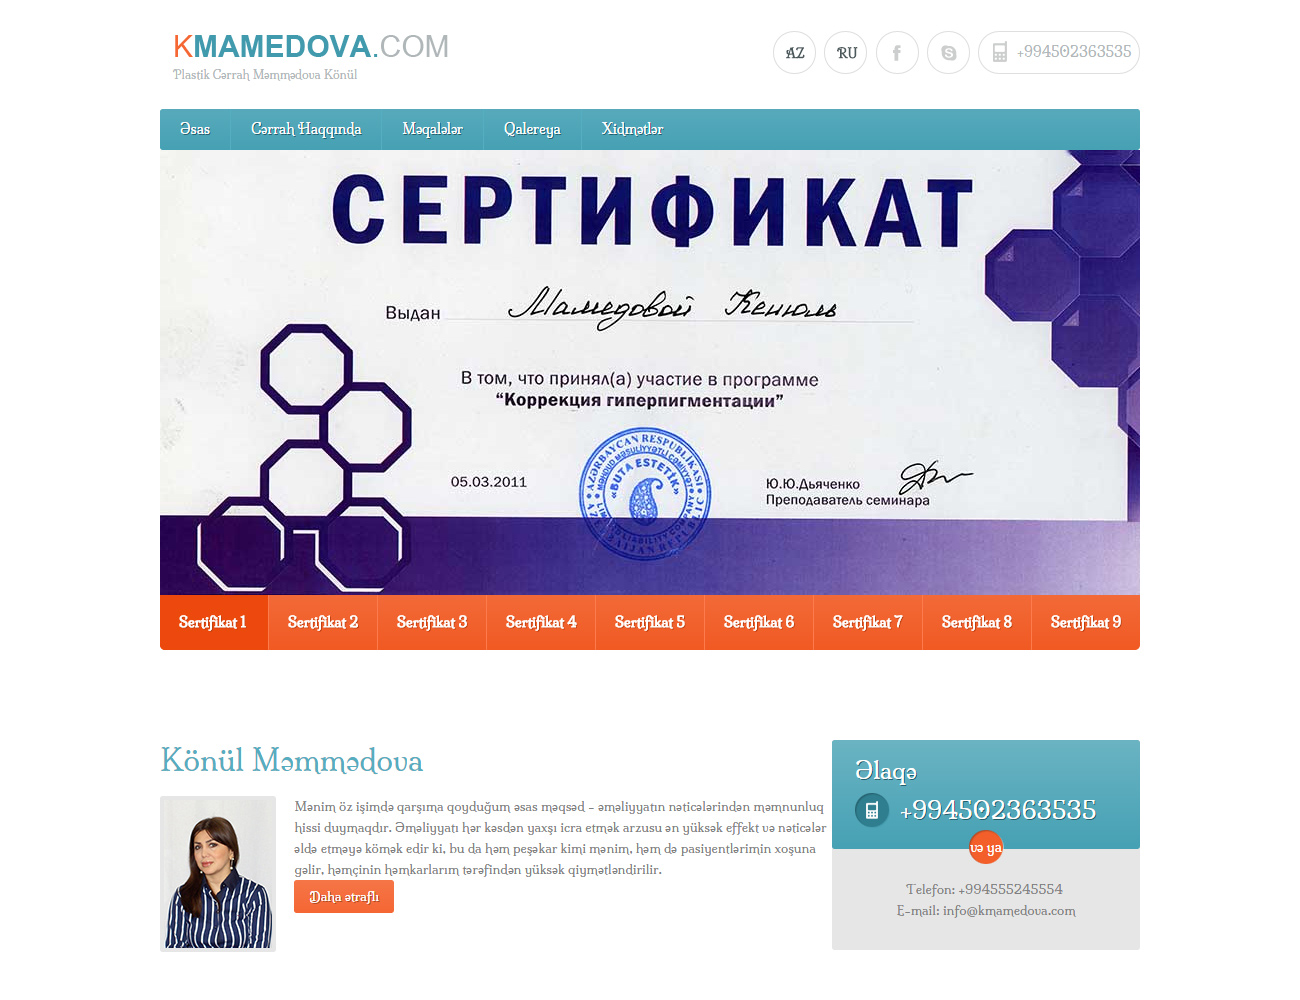 Kmamedova.com